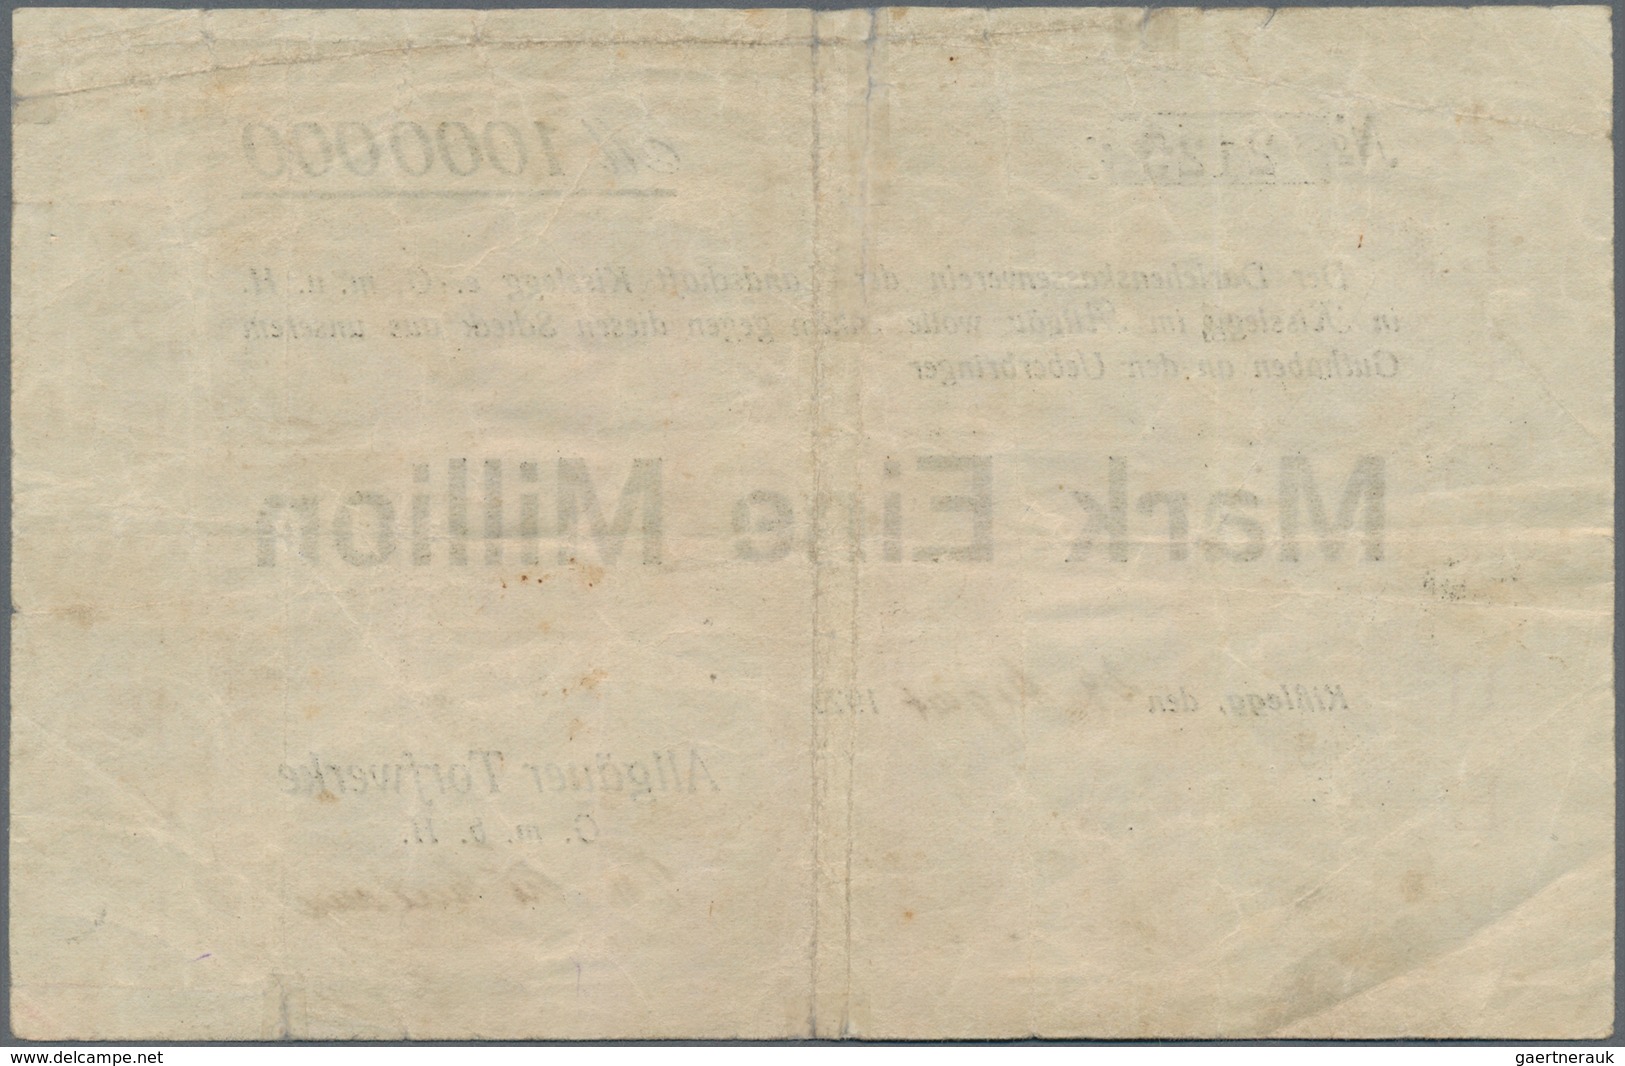 Deutschland - Notgeld - Württemberg: Kißlegg, Allgäuer Torfwerke, 1 Mio. Mark, 24.8.1923, Erh. IV - Lokale Ausgaben